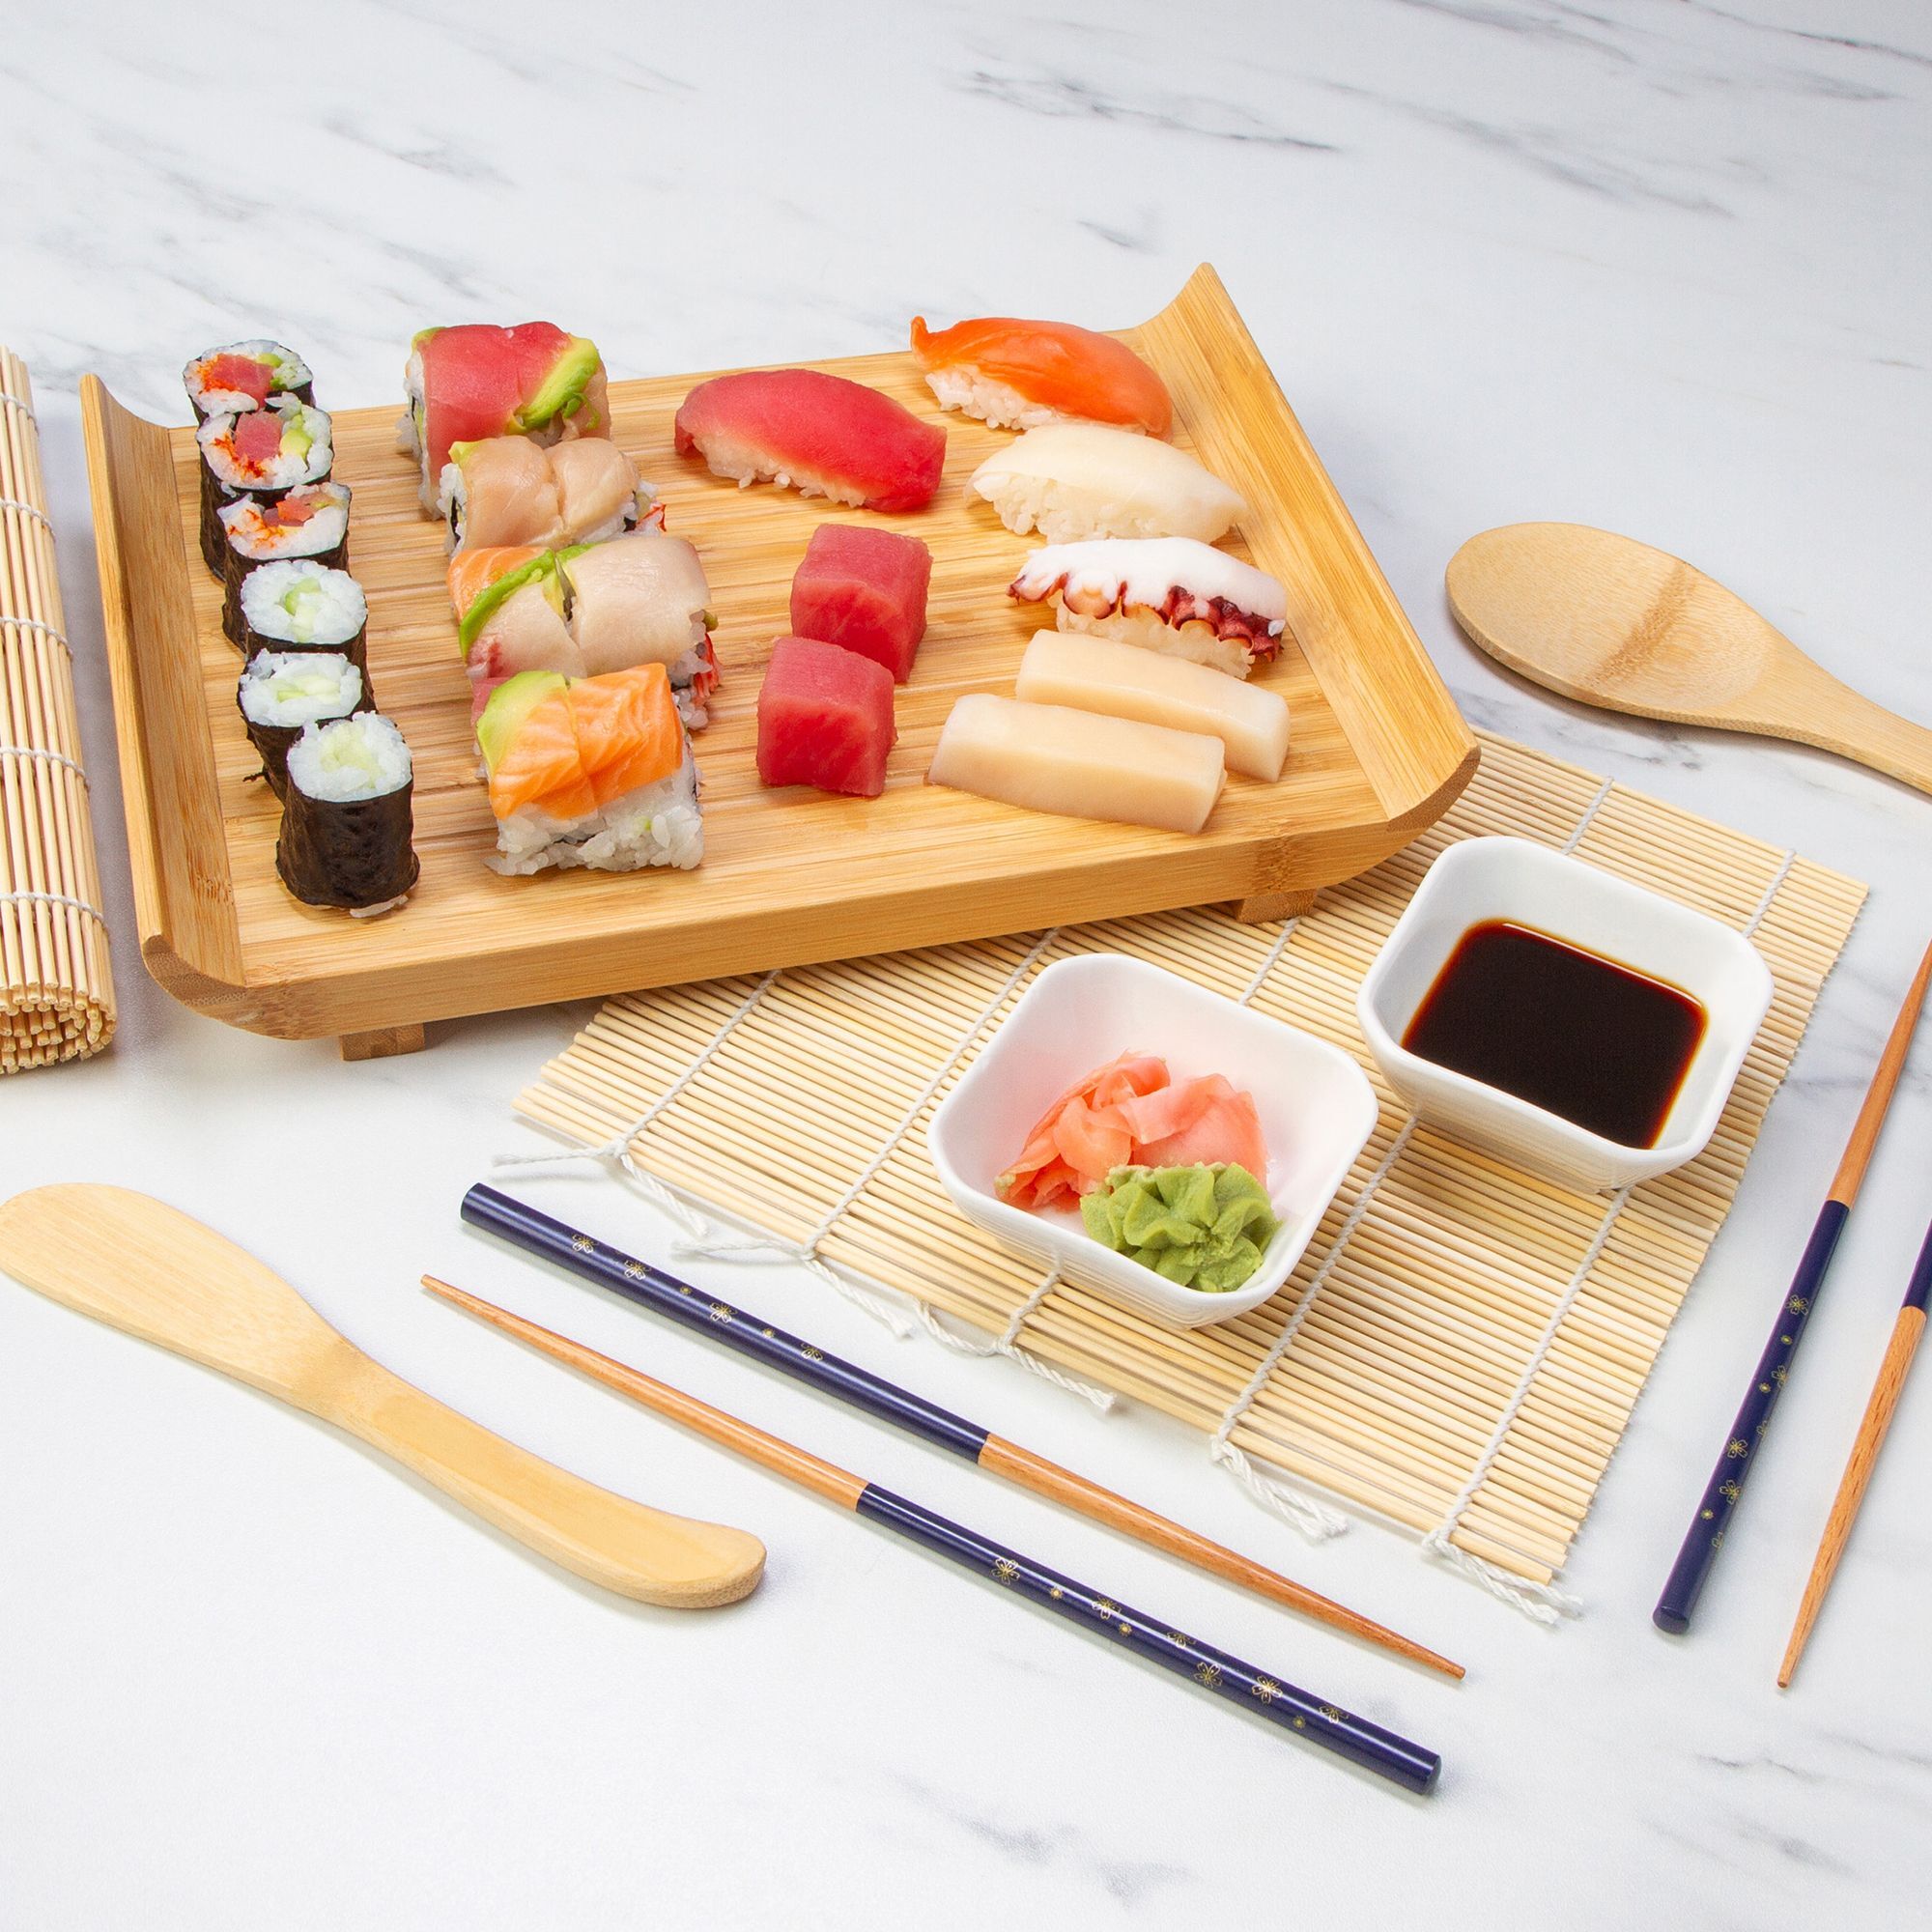 Bamboo Sushi Making Kit by Home Direct - FabFitFun